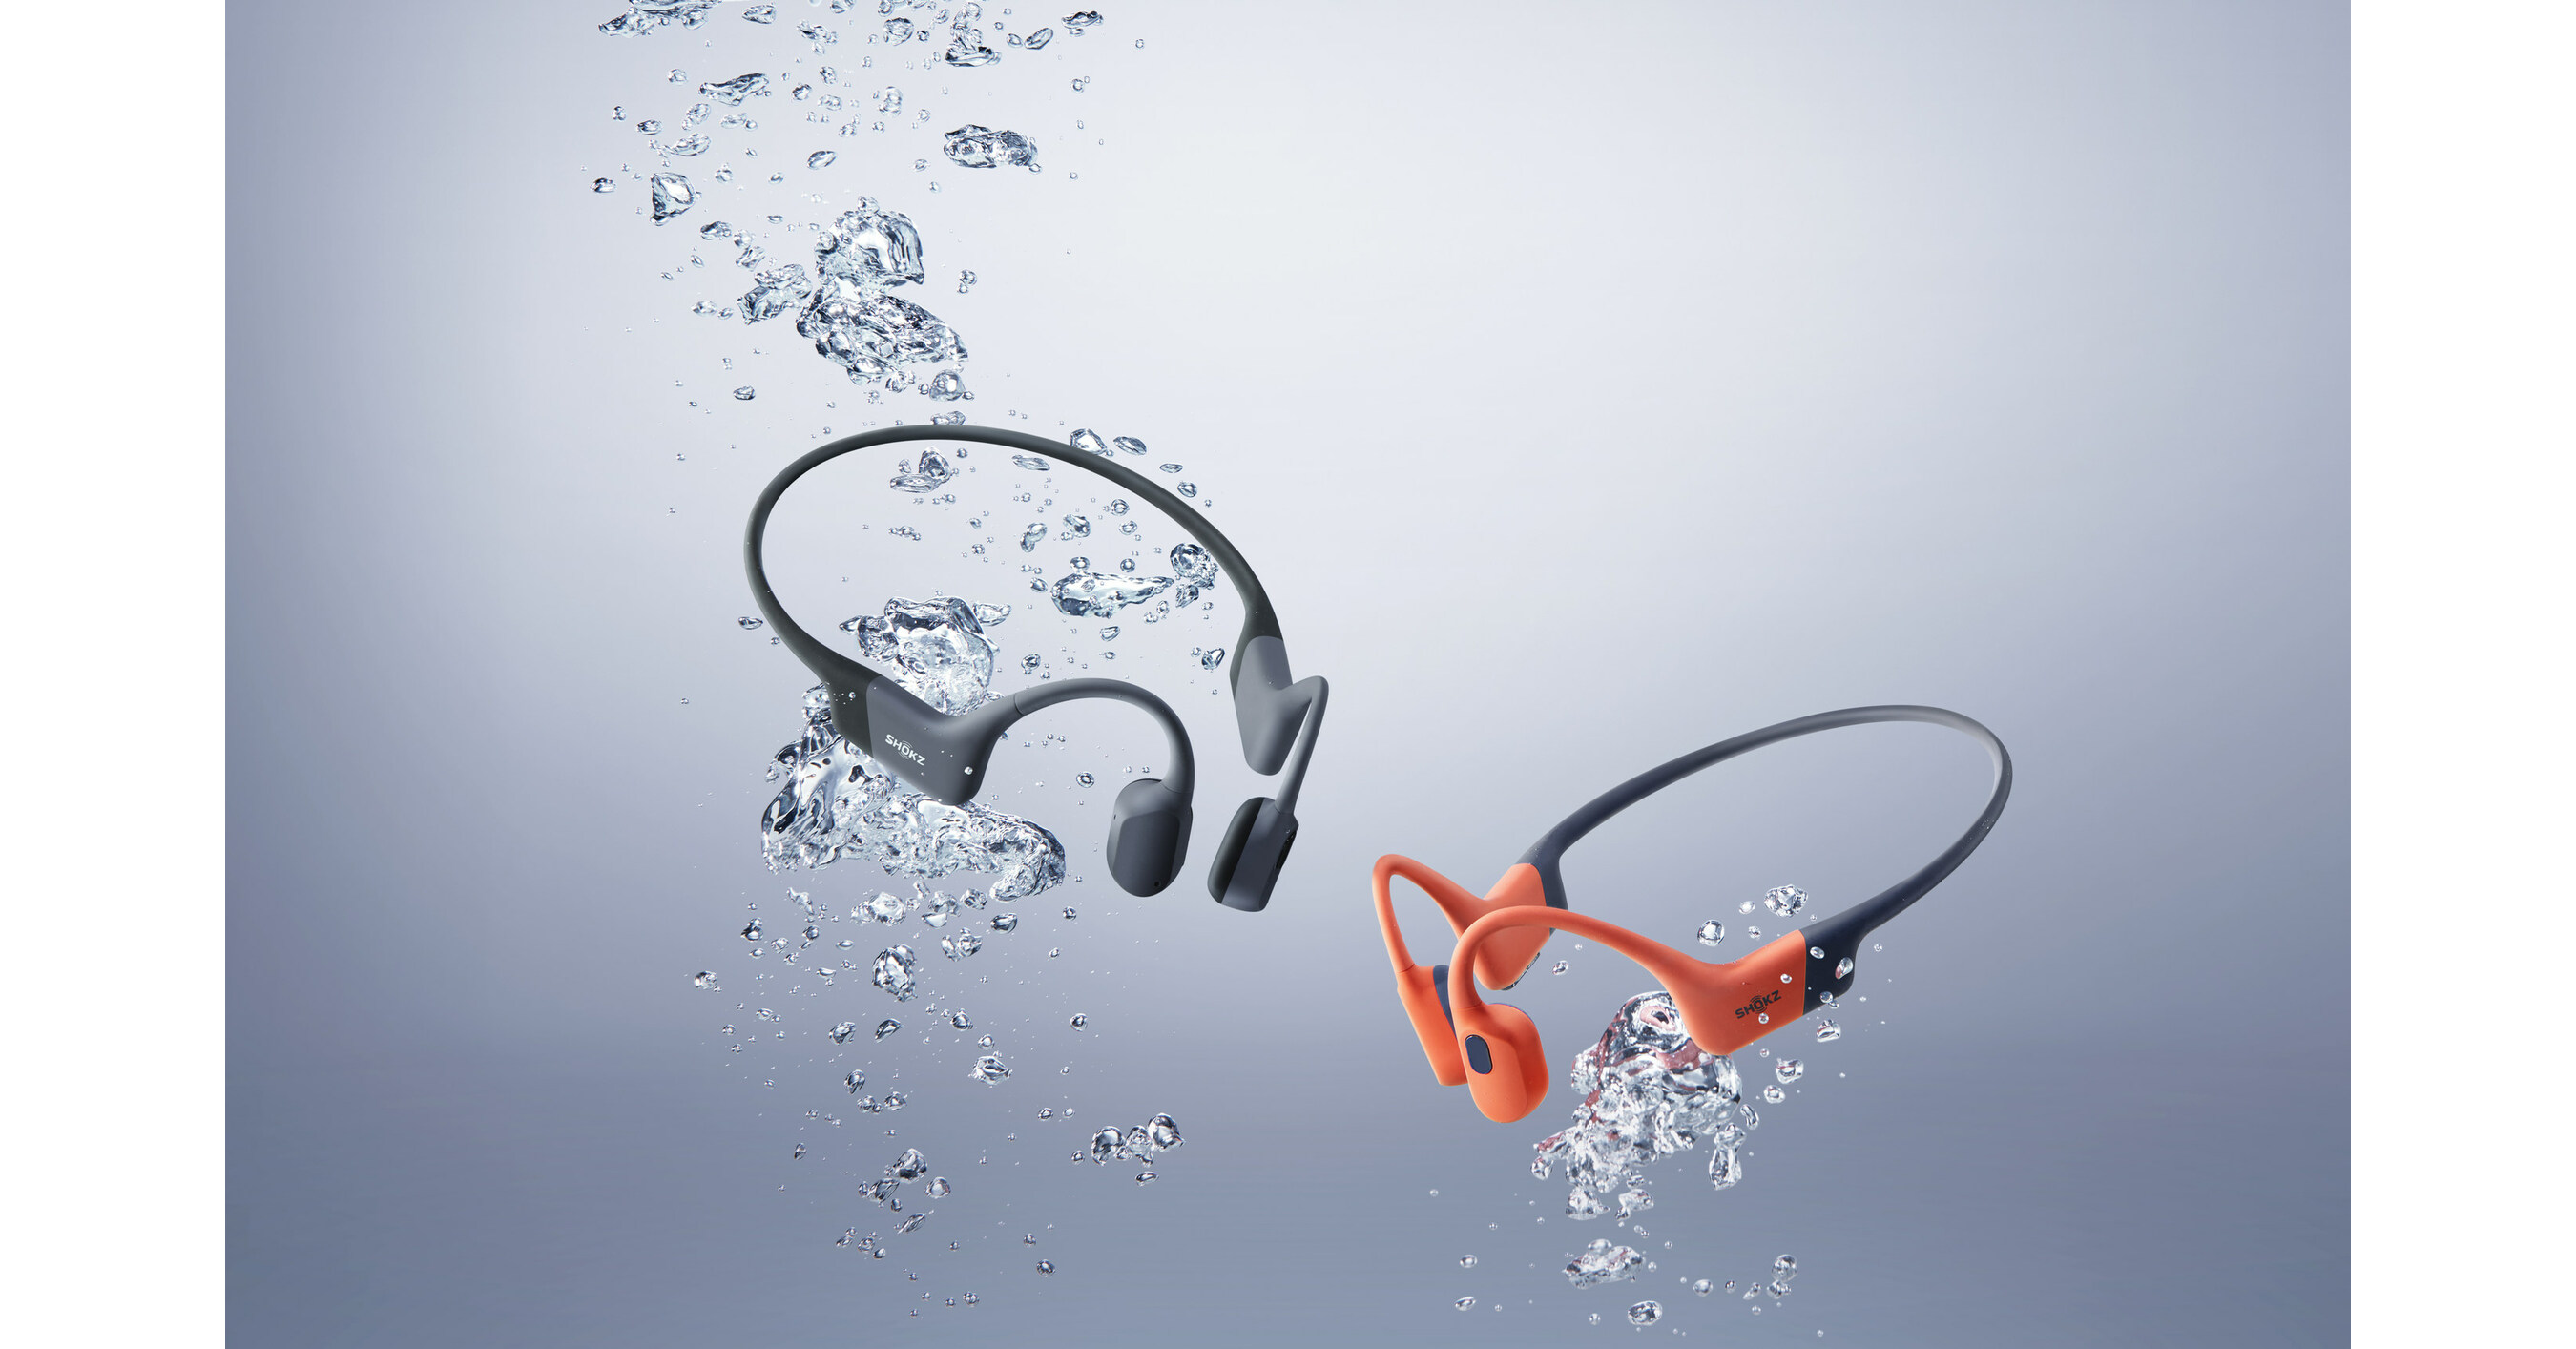 Shokz OpenSwim Headphones Electronics